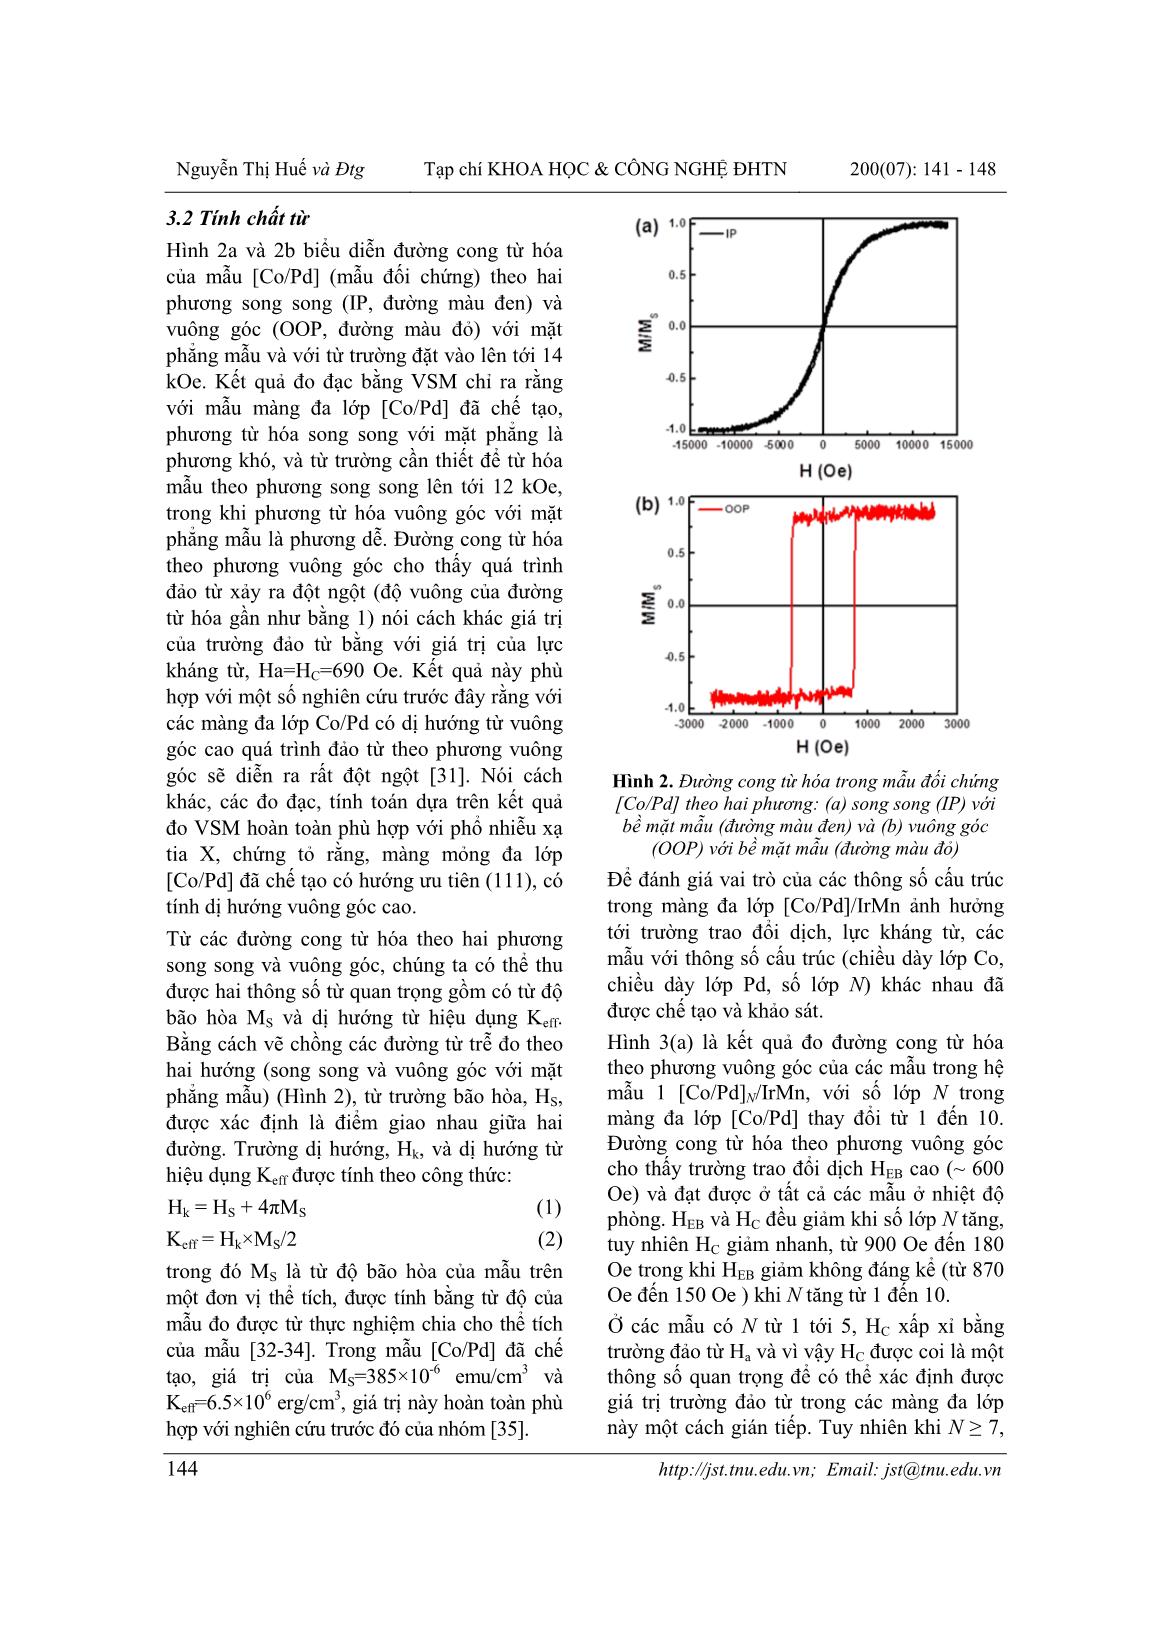 Điều biến trường trao đổi dịch và lực kháng từ theo phương vuông góc trong màng đa lớp [Co/Pd]/IrMn trang 4